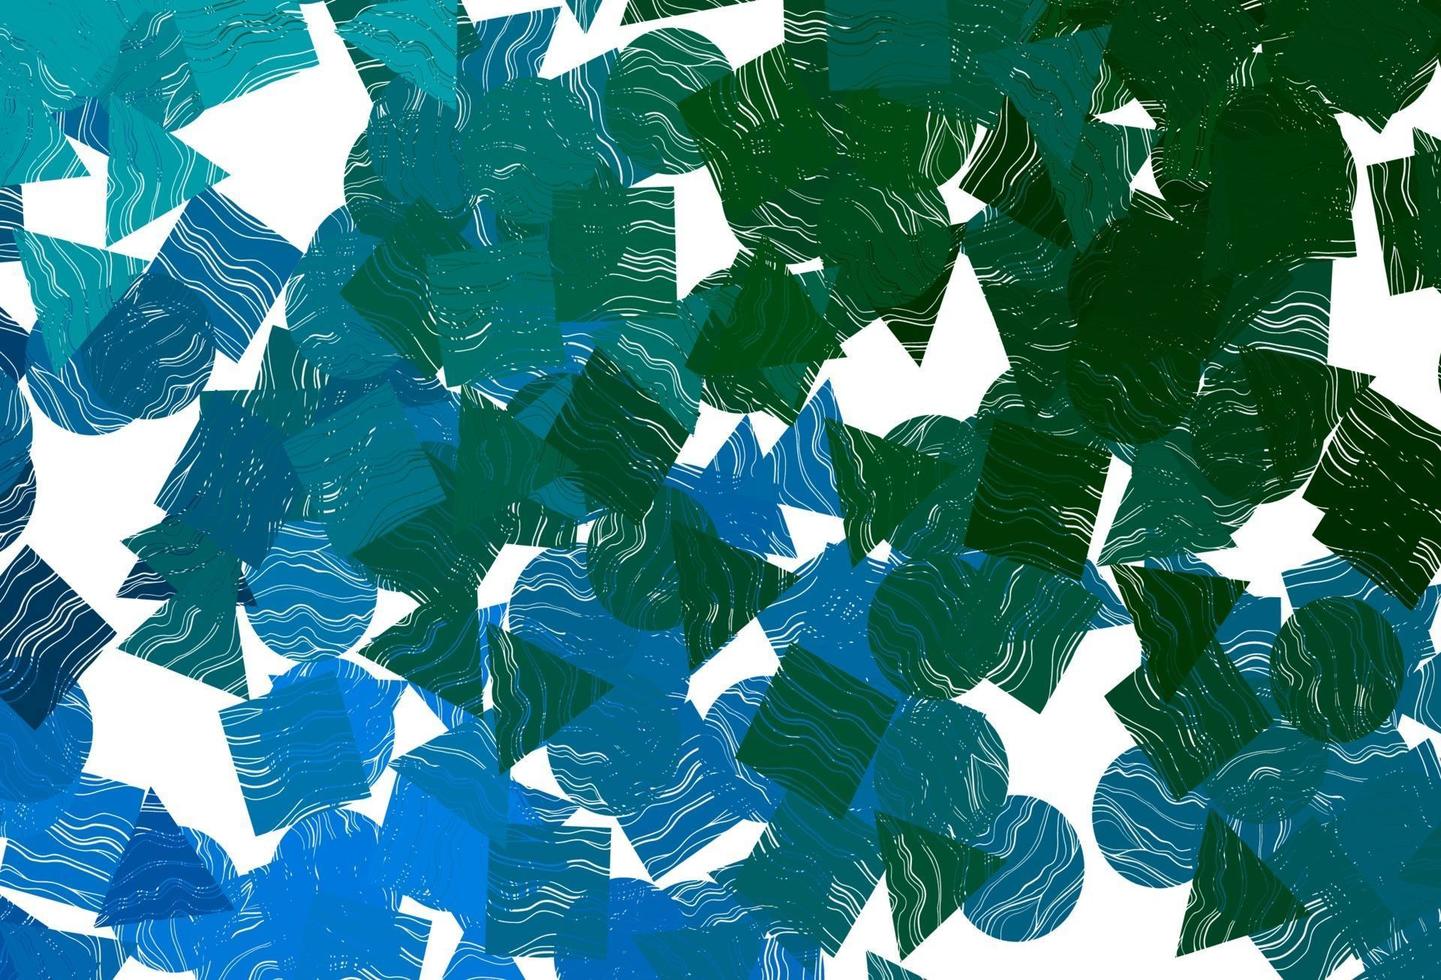 mörkblå, grön vektorbakgrund med trianglar, cirklar, kuber. vektor